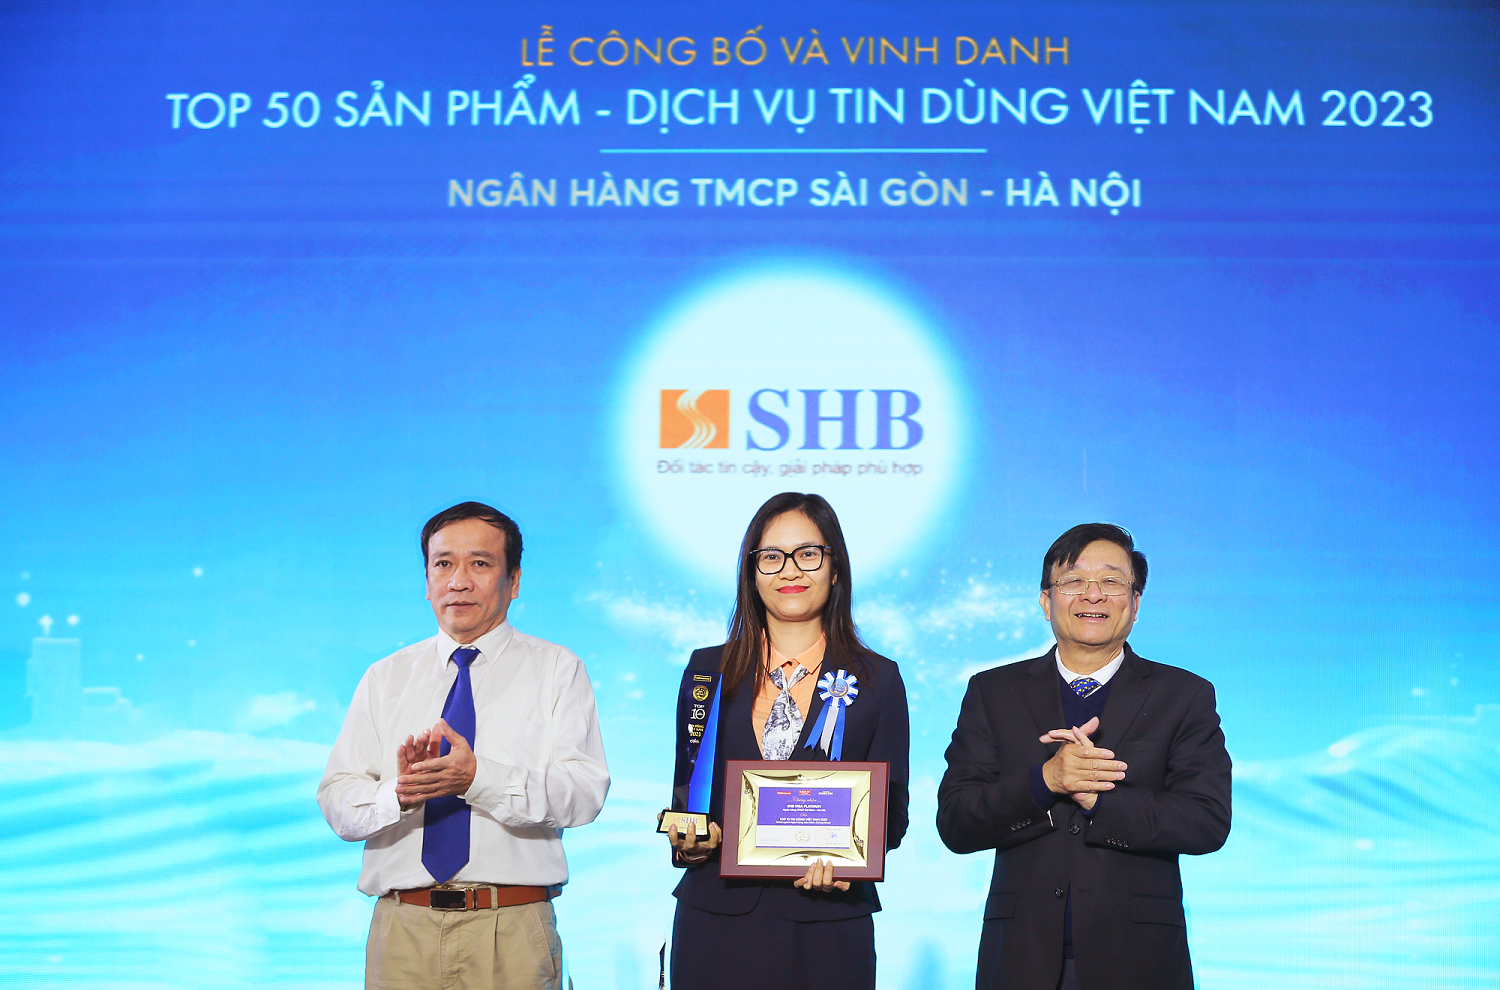 Bà Đoàn Thái Thanh Thủy - Giám đốc Trung tâm Phát triển sản phẩm Khách hàng cá nhân, đại diện SHB nhận giải thưởng 